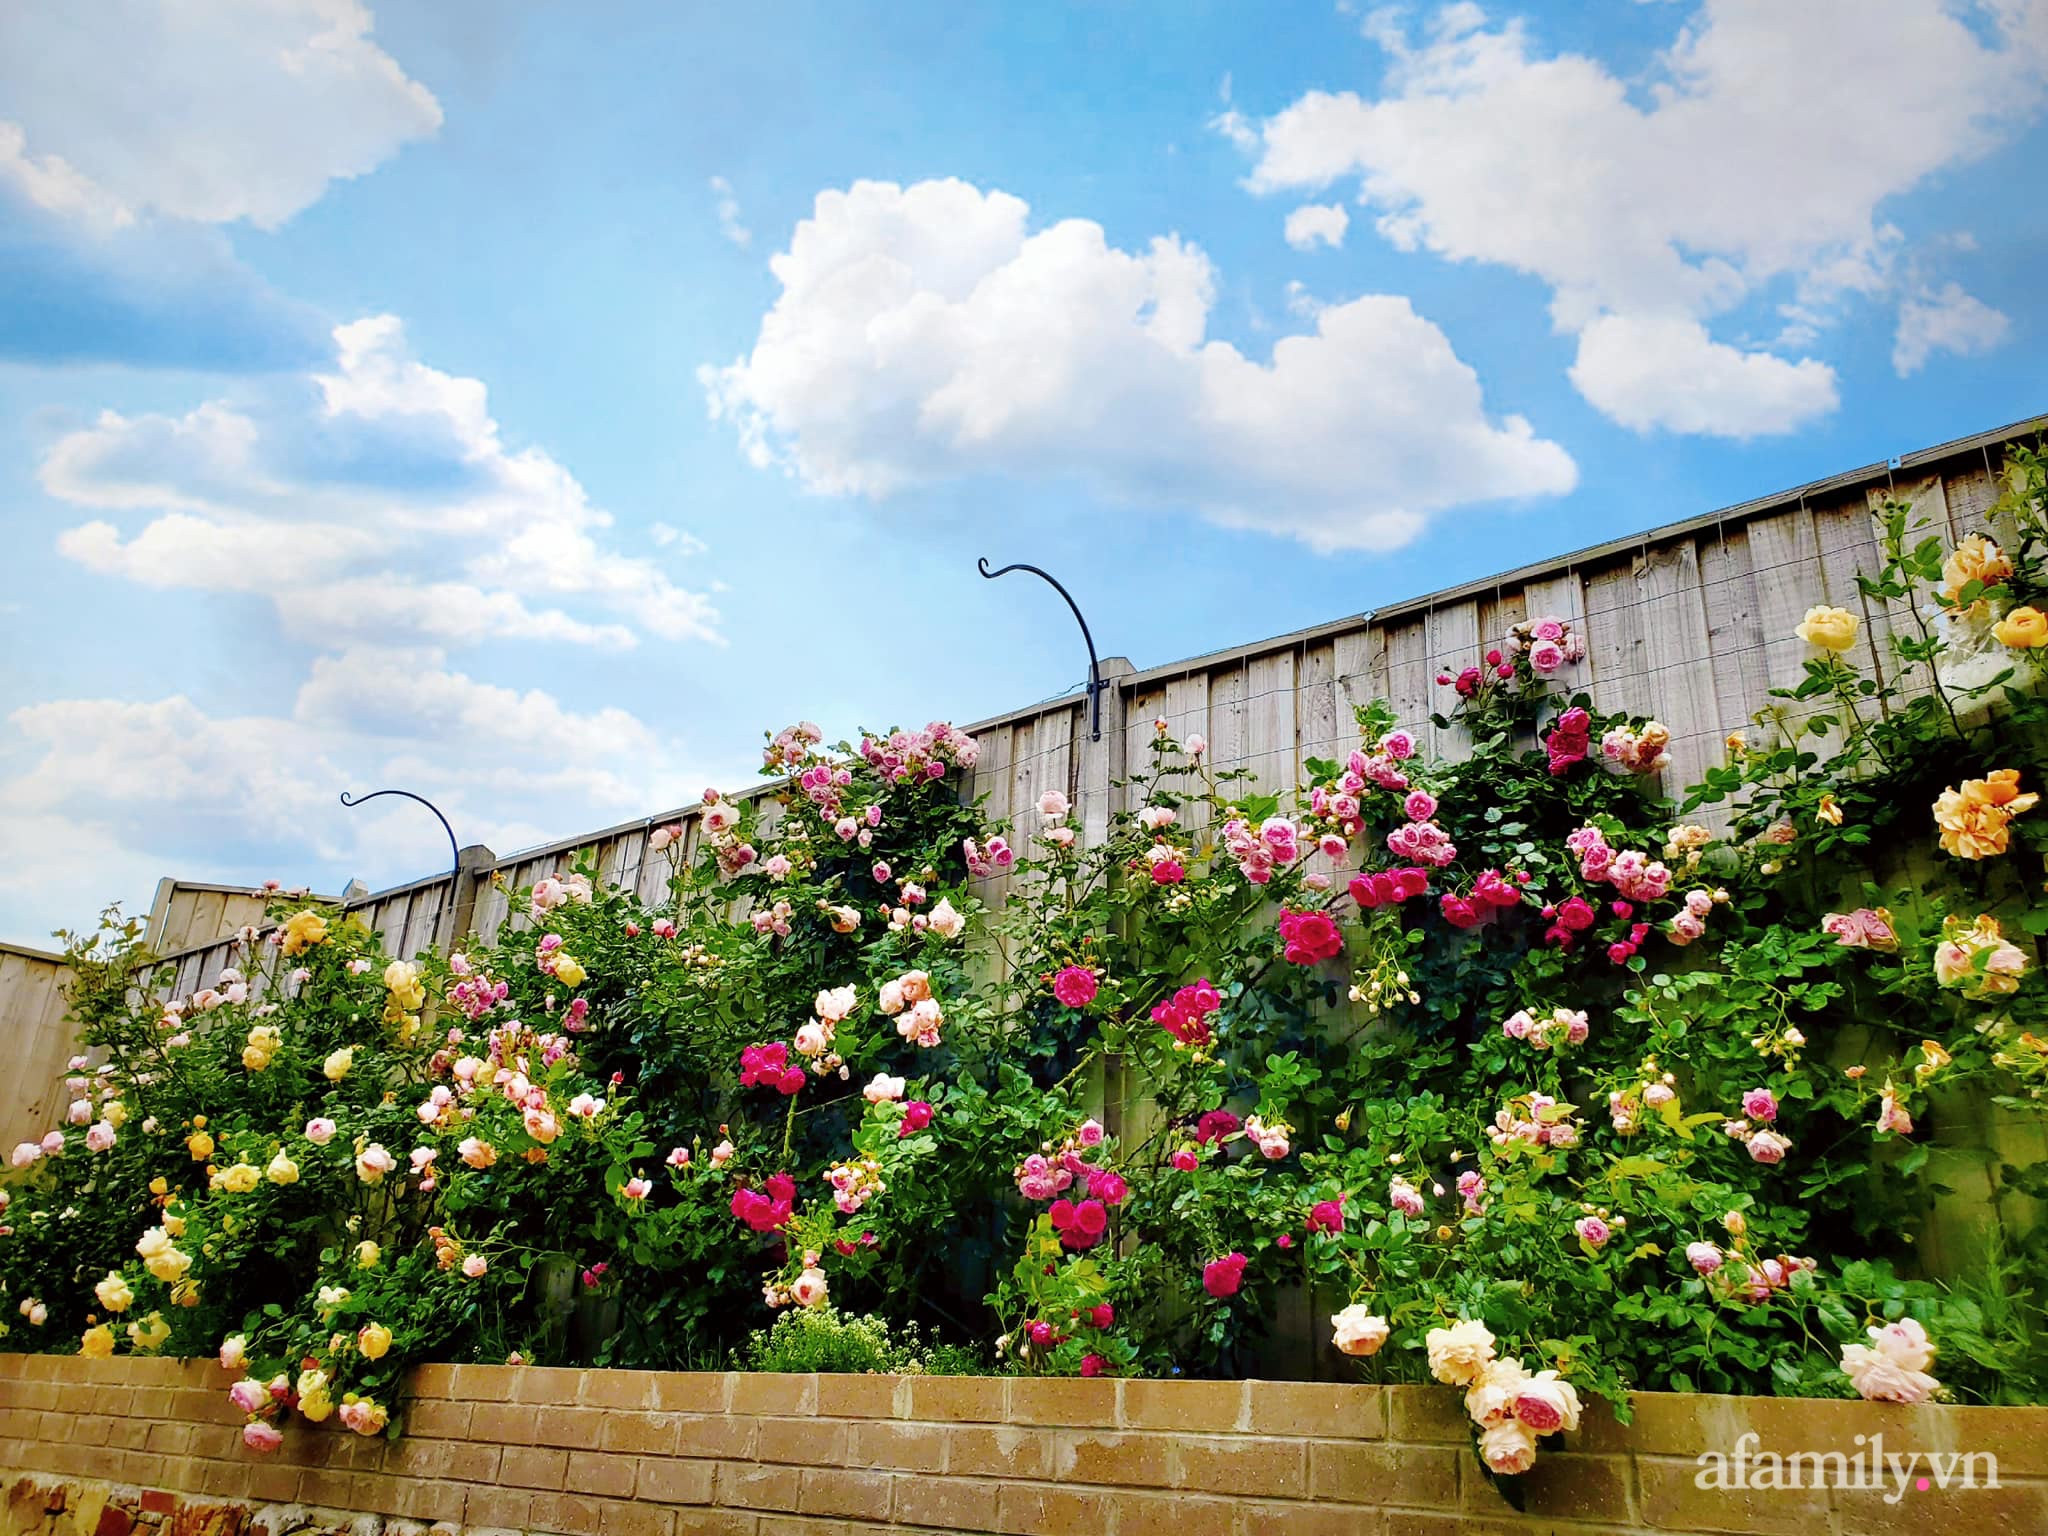 Vườn hồng 250m² ngát hương rực rỡ sắc màu đẹp như cổ tích của mẹ Việt ở Úc - Ảnh 18.